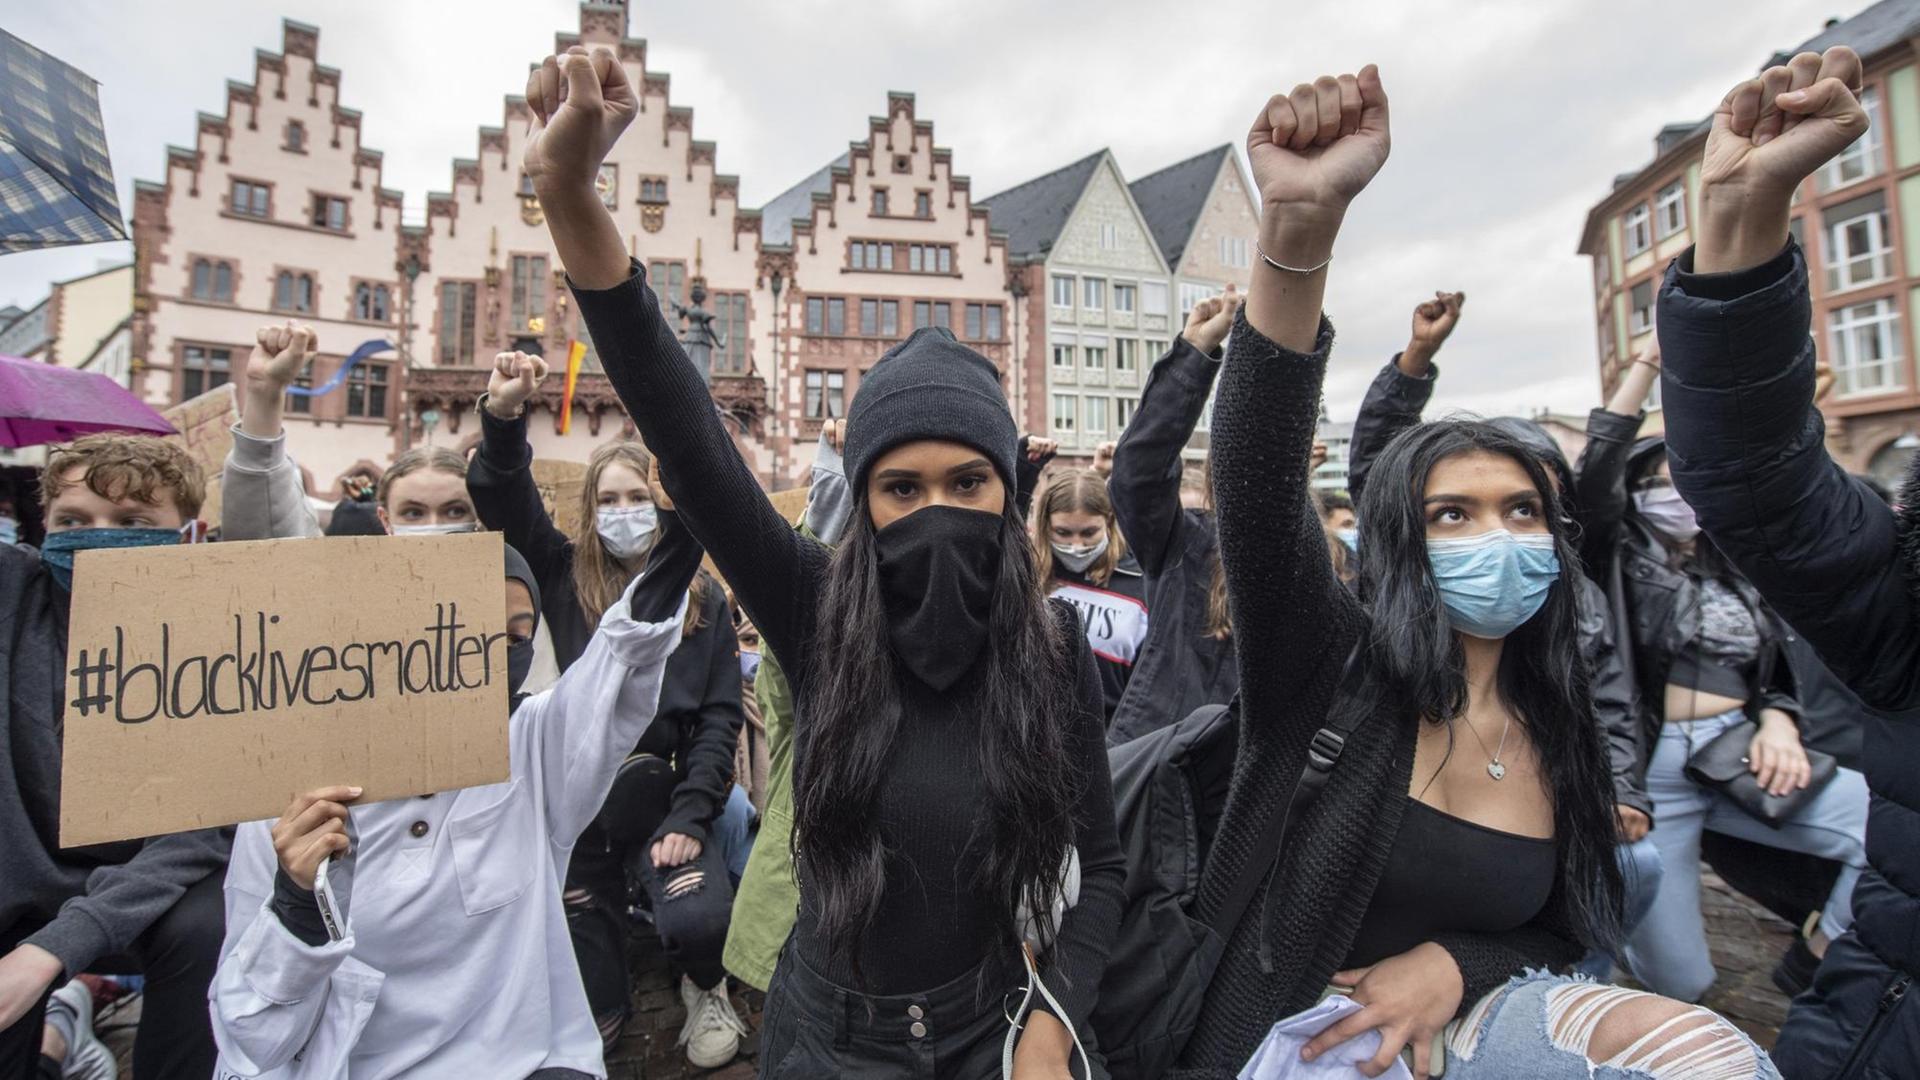 Auf Knien und mit in die Höhe gestreckter Faust bekunden Demonstrantinnen auf dem Römerberg in Frankfurt ihre Solidarität mit den Anti-Rassismus-Protesten in den USA.